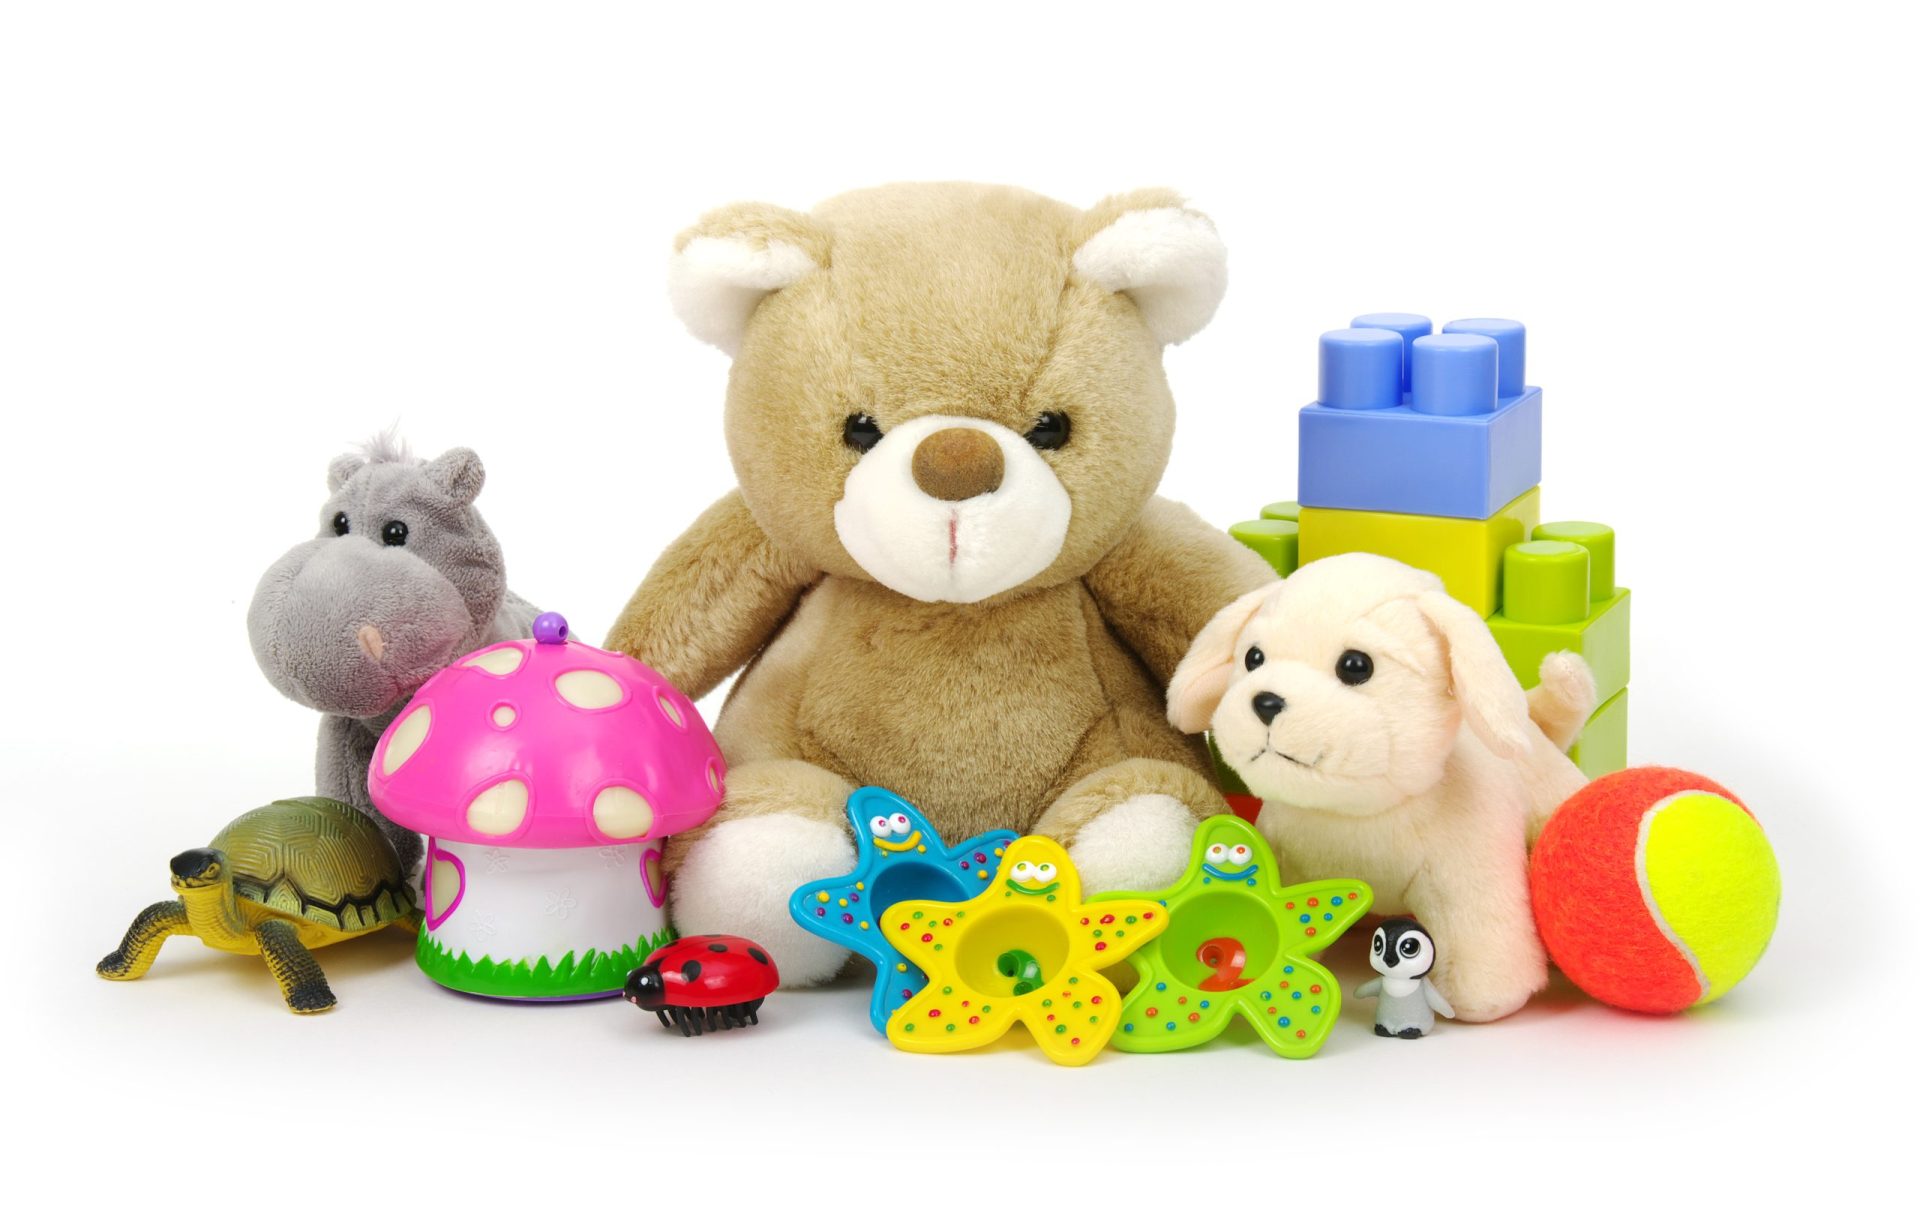 DECO chumba 18 brinquedos para crianças por falta de segurança